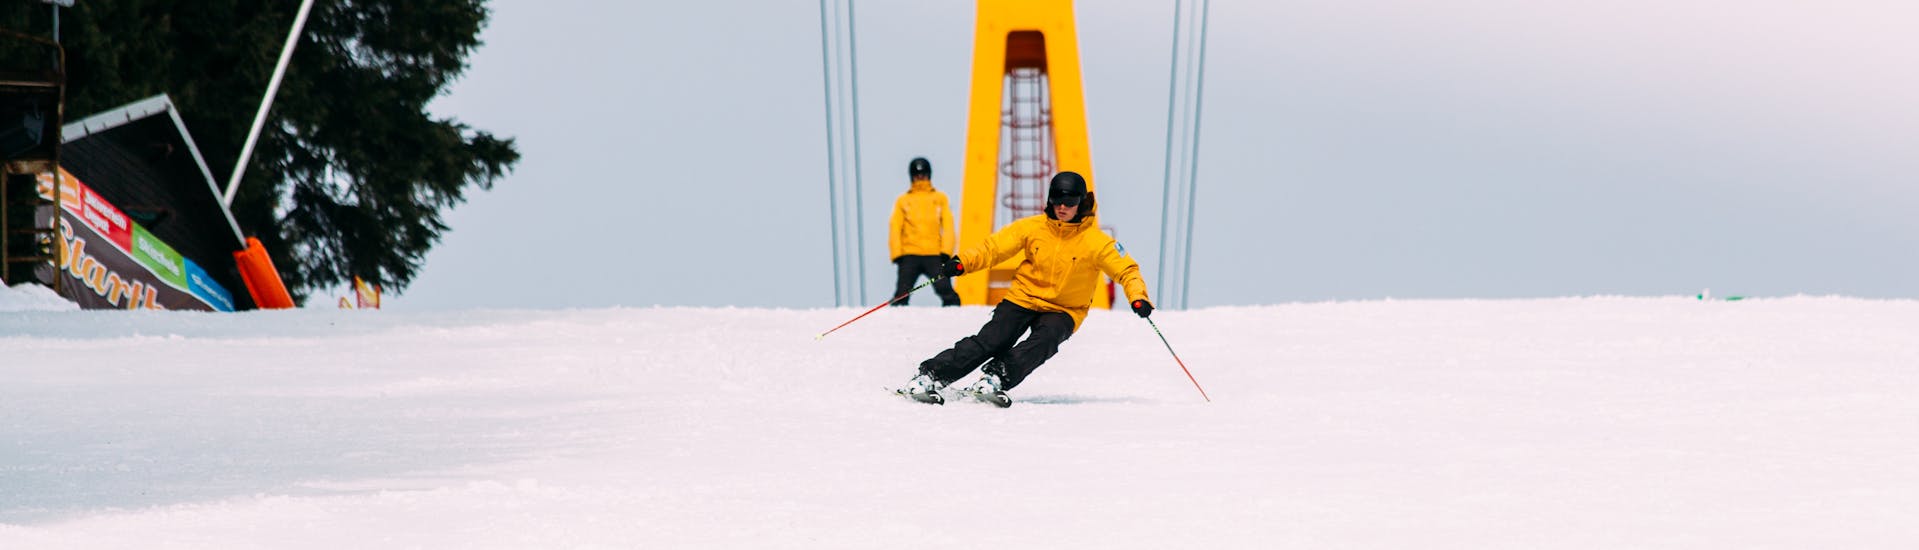 Skilessen voor Volwassenen voor Alle Niveaus.